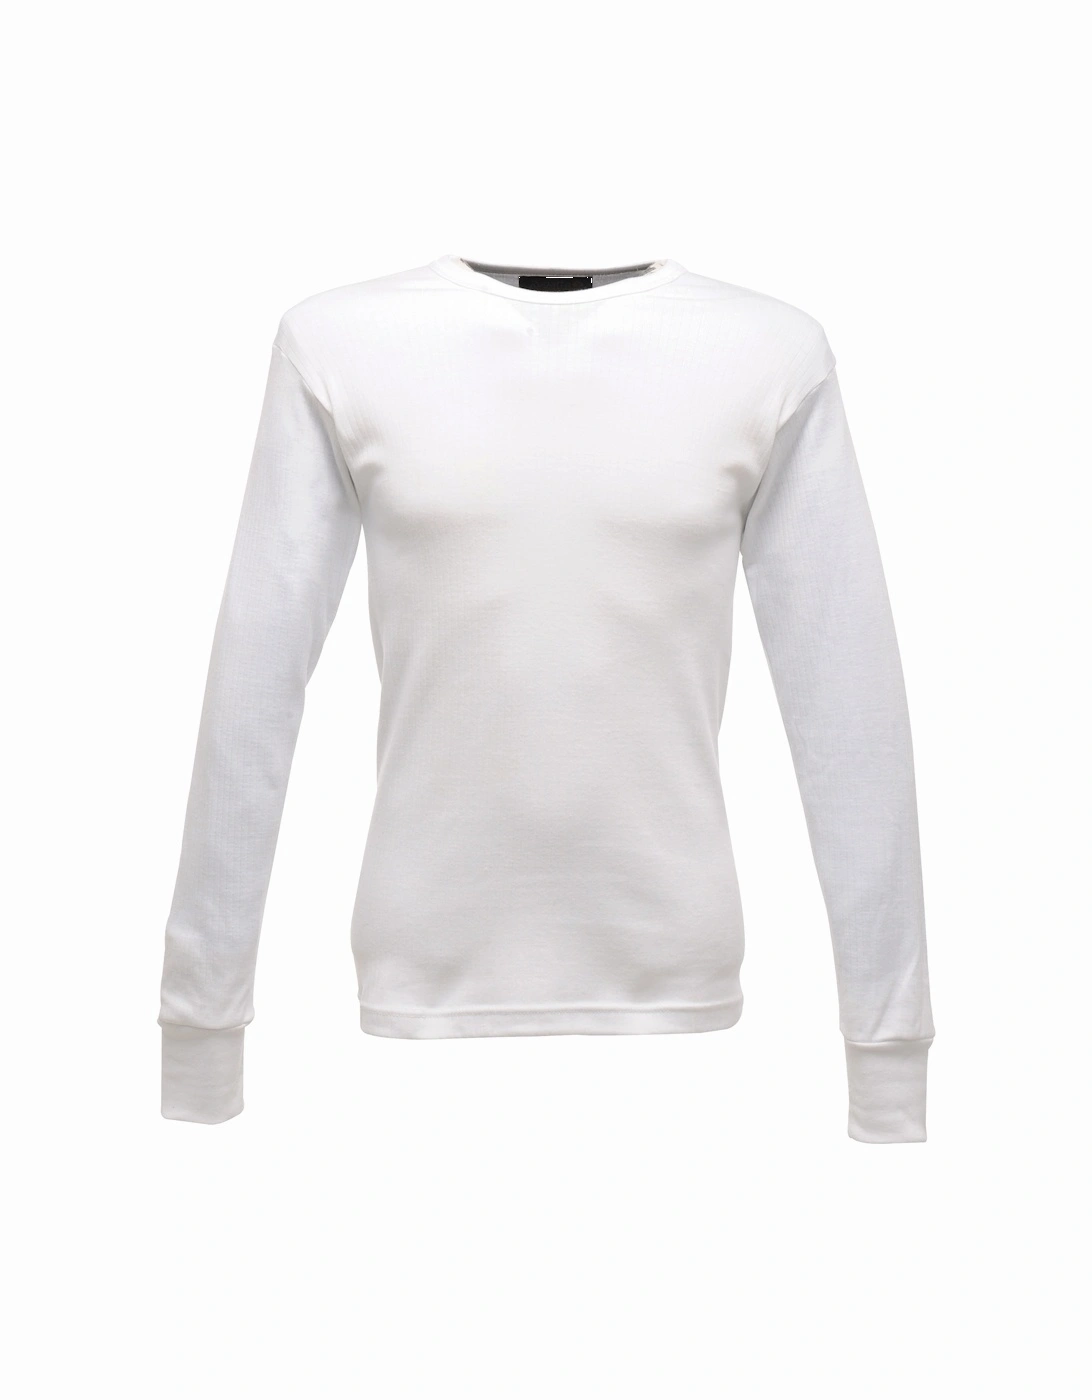 Thermal Underwear Long Sleeve Vest / Top, 6 of 5